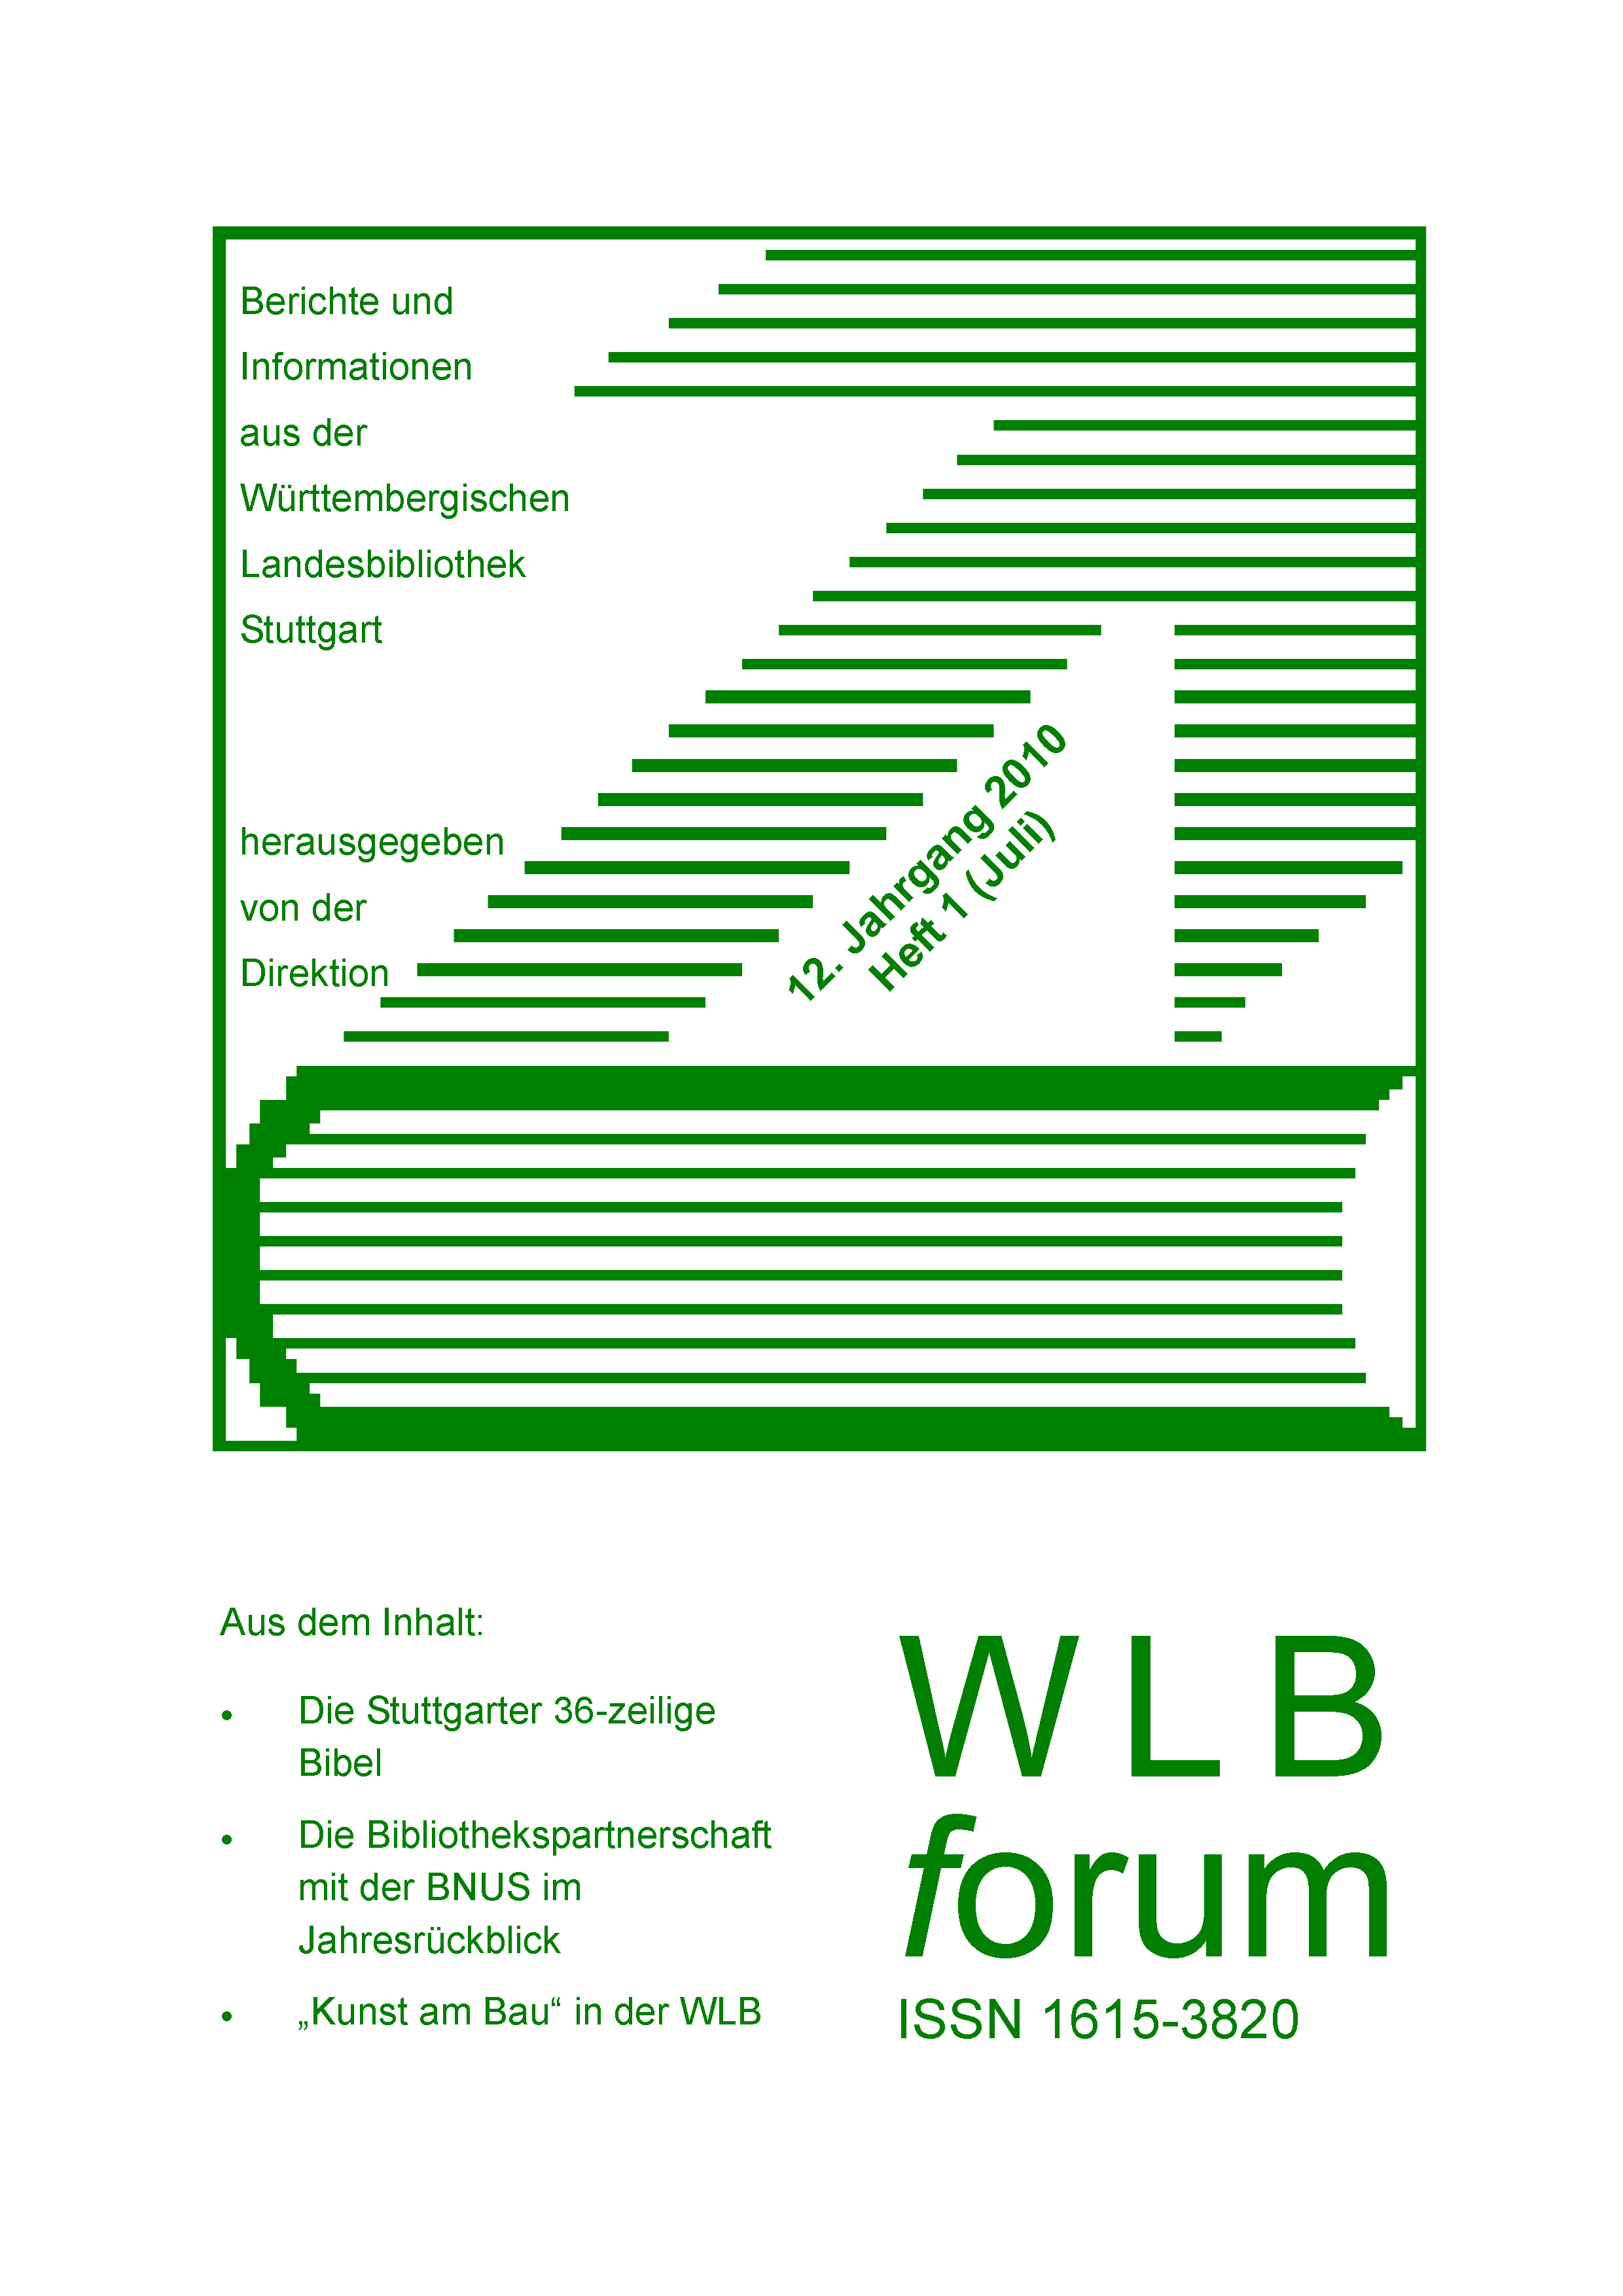                     Ansehen Bd. 12 Nr. 1 (2010): WLBforum
                